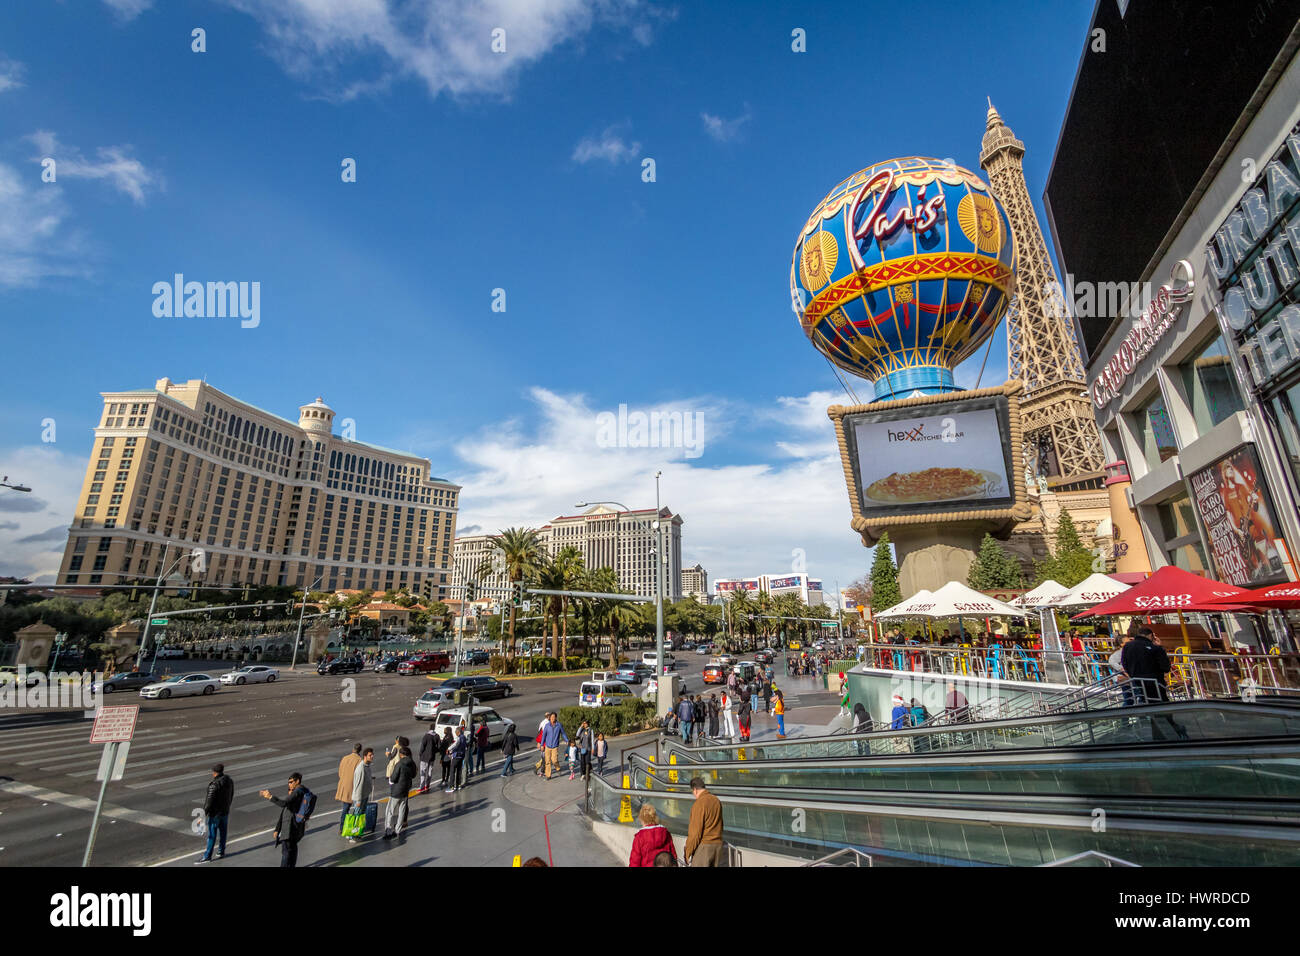 Las Vegas Strip and Paris Hotel Casino - Las Vegas, Nevada, USA Stock Photo